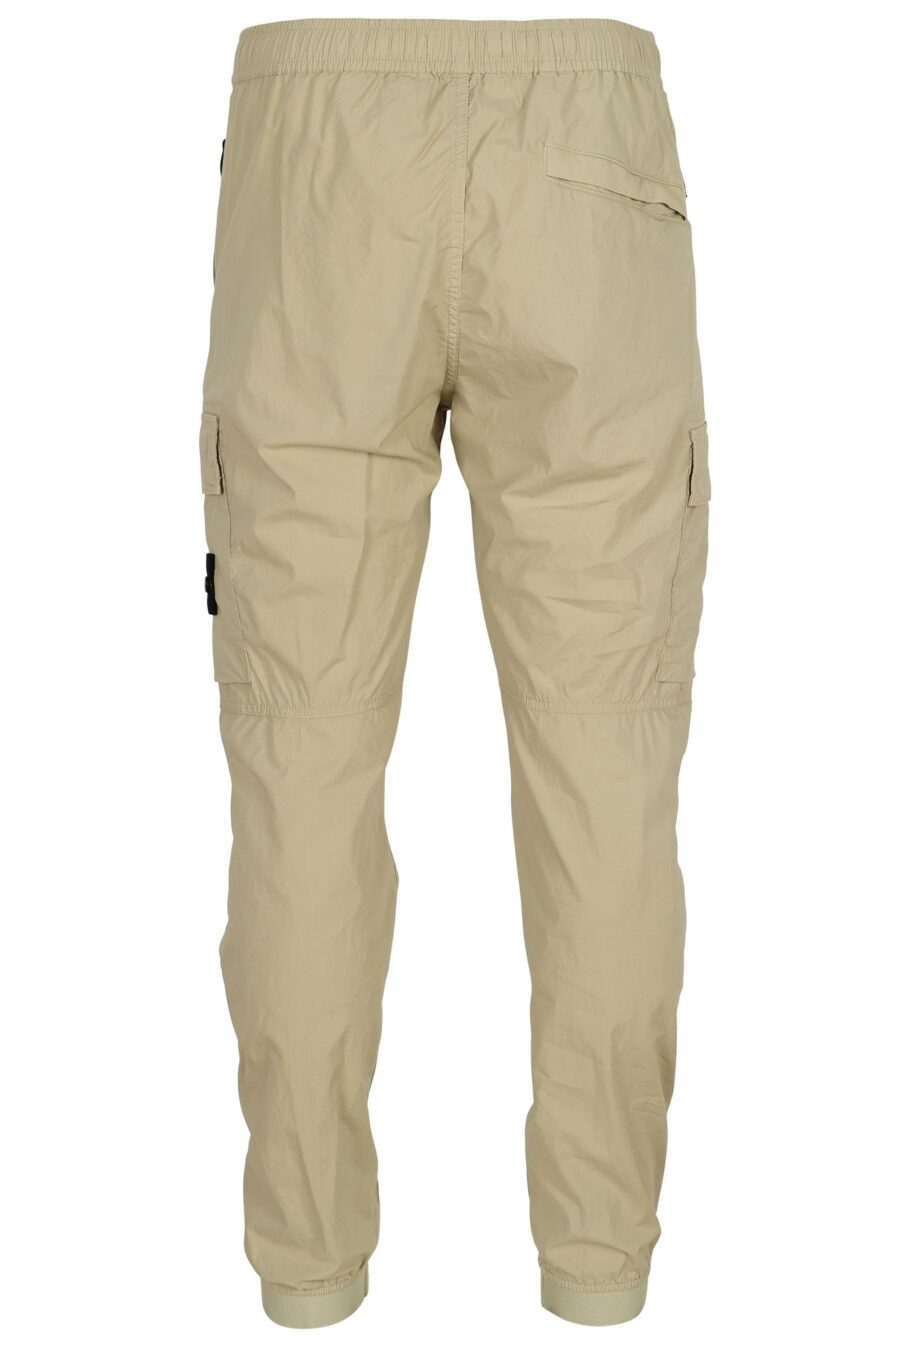 Pantalon fuselé de couleur sable avec patch boussole logo - 8052572906572 1